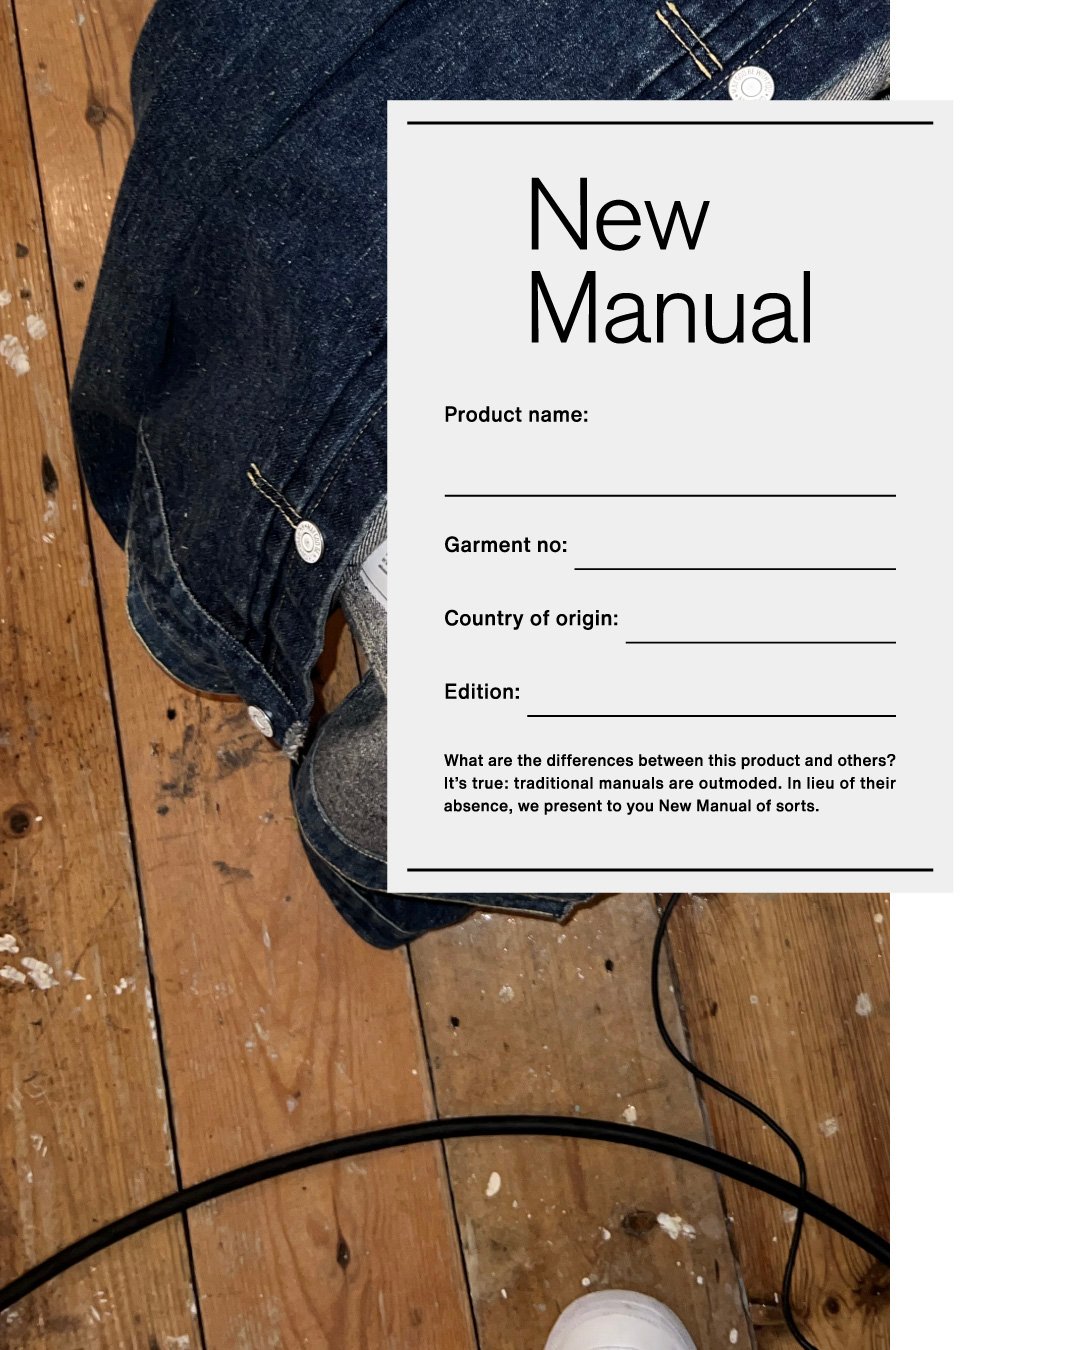 ヴィンテージアイテムを捉え直す新ブランド「New Manual」がデビュー 